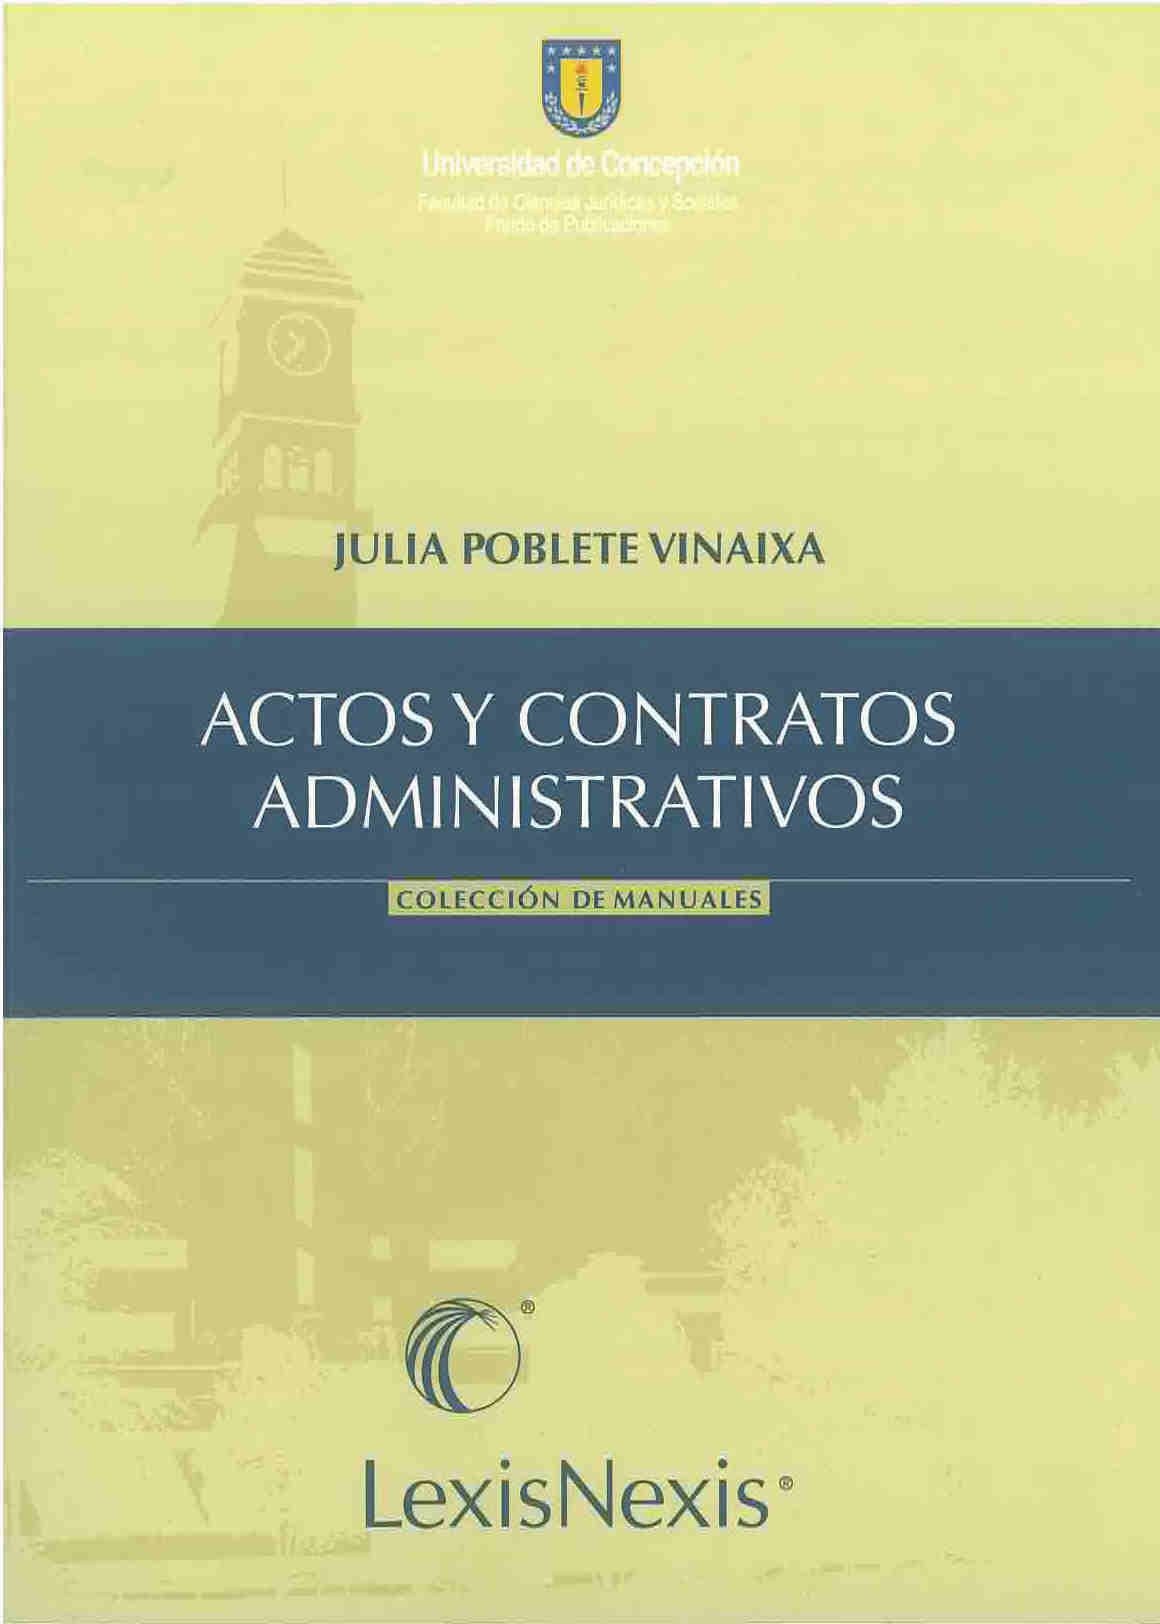 Actos y contratos administrativos